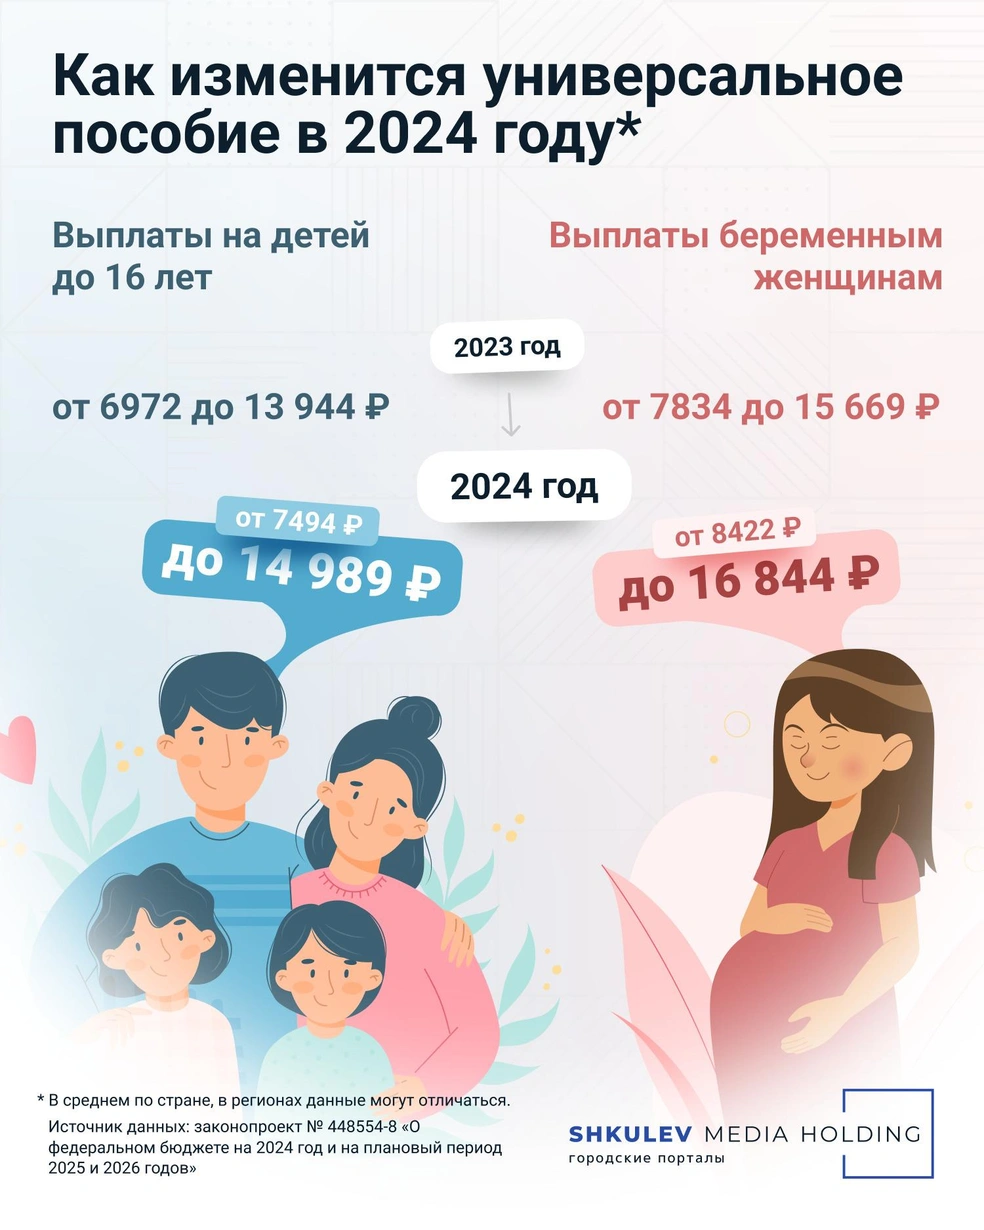 Размер универсального пособия на ребенка и пособия беременным в 2024 году -  28 ноября 2023 - НГС24.ру